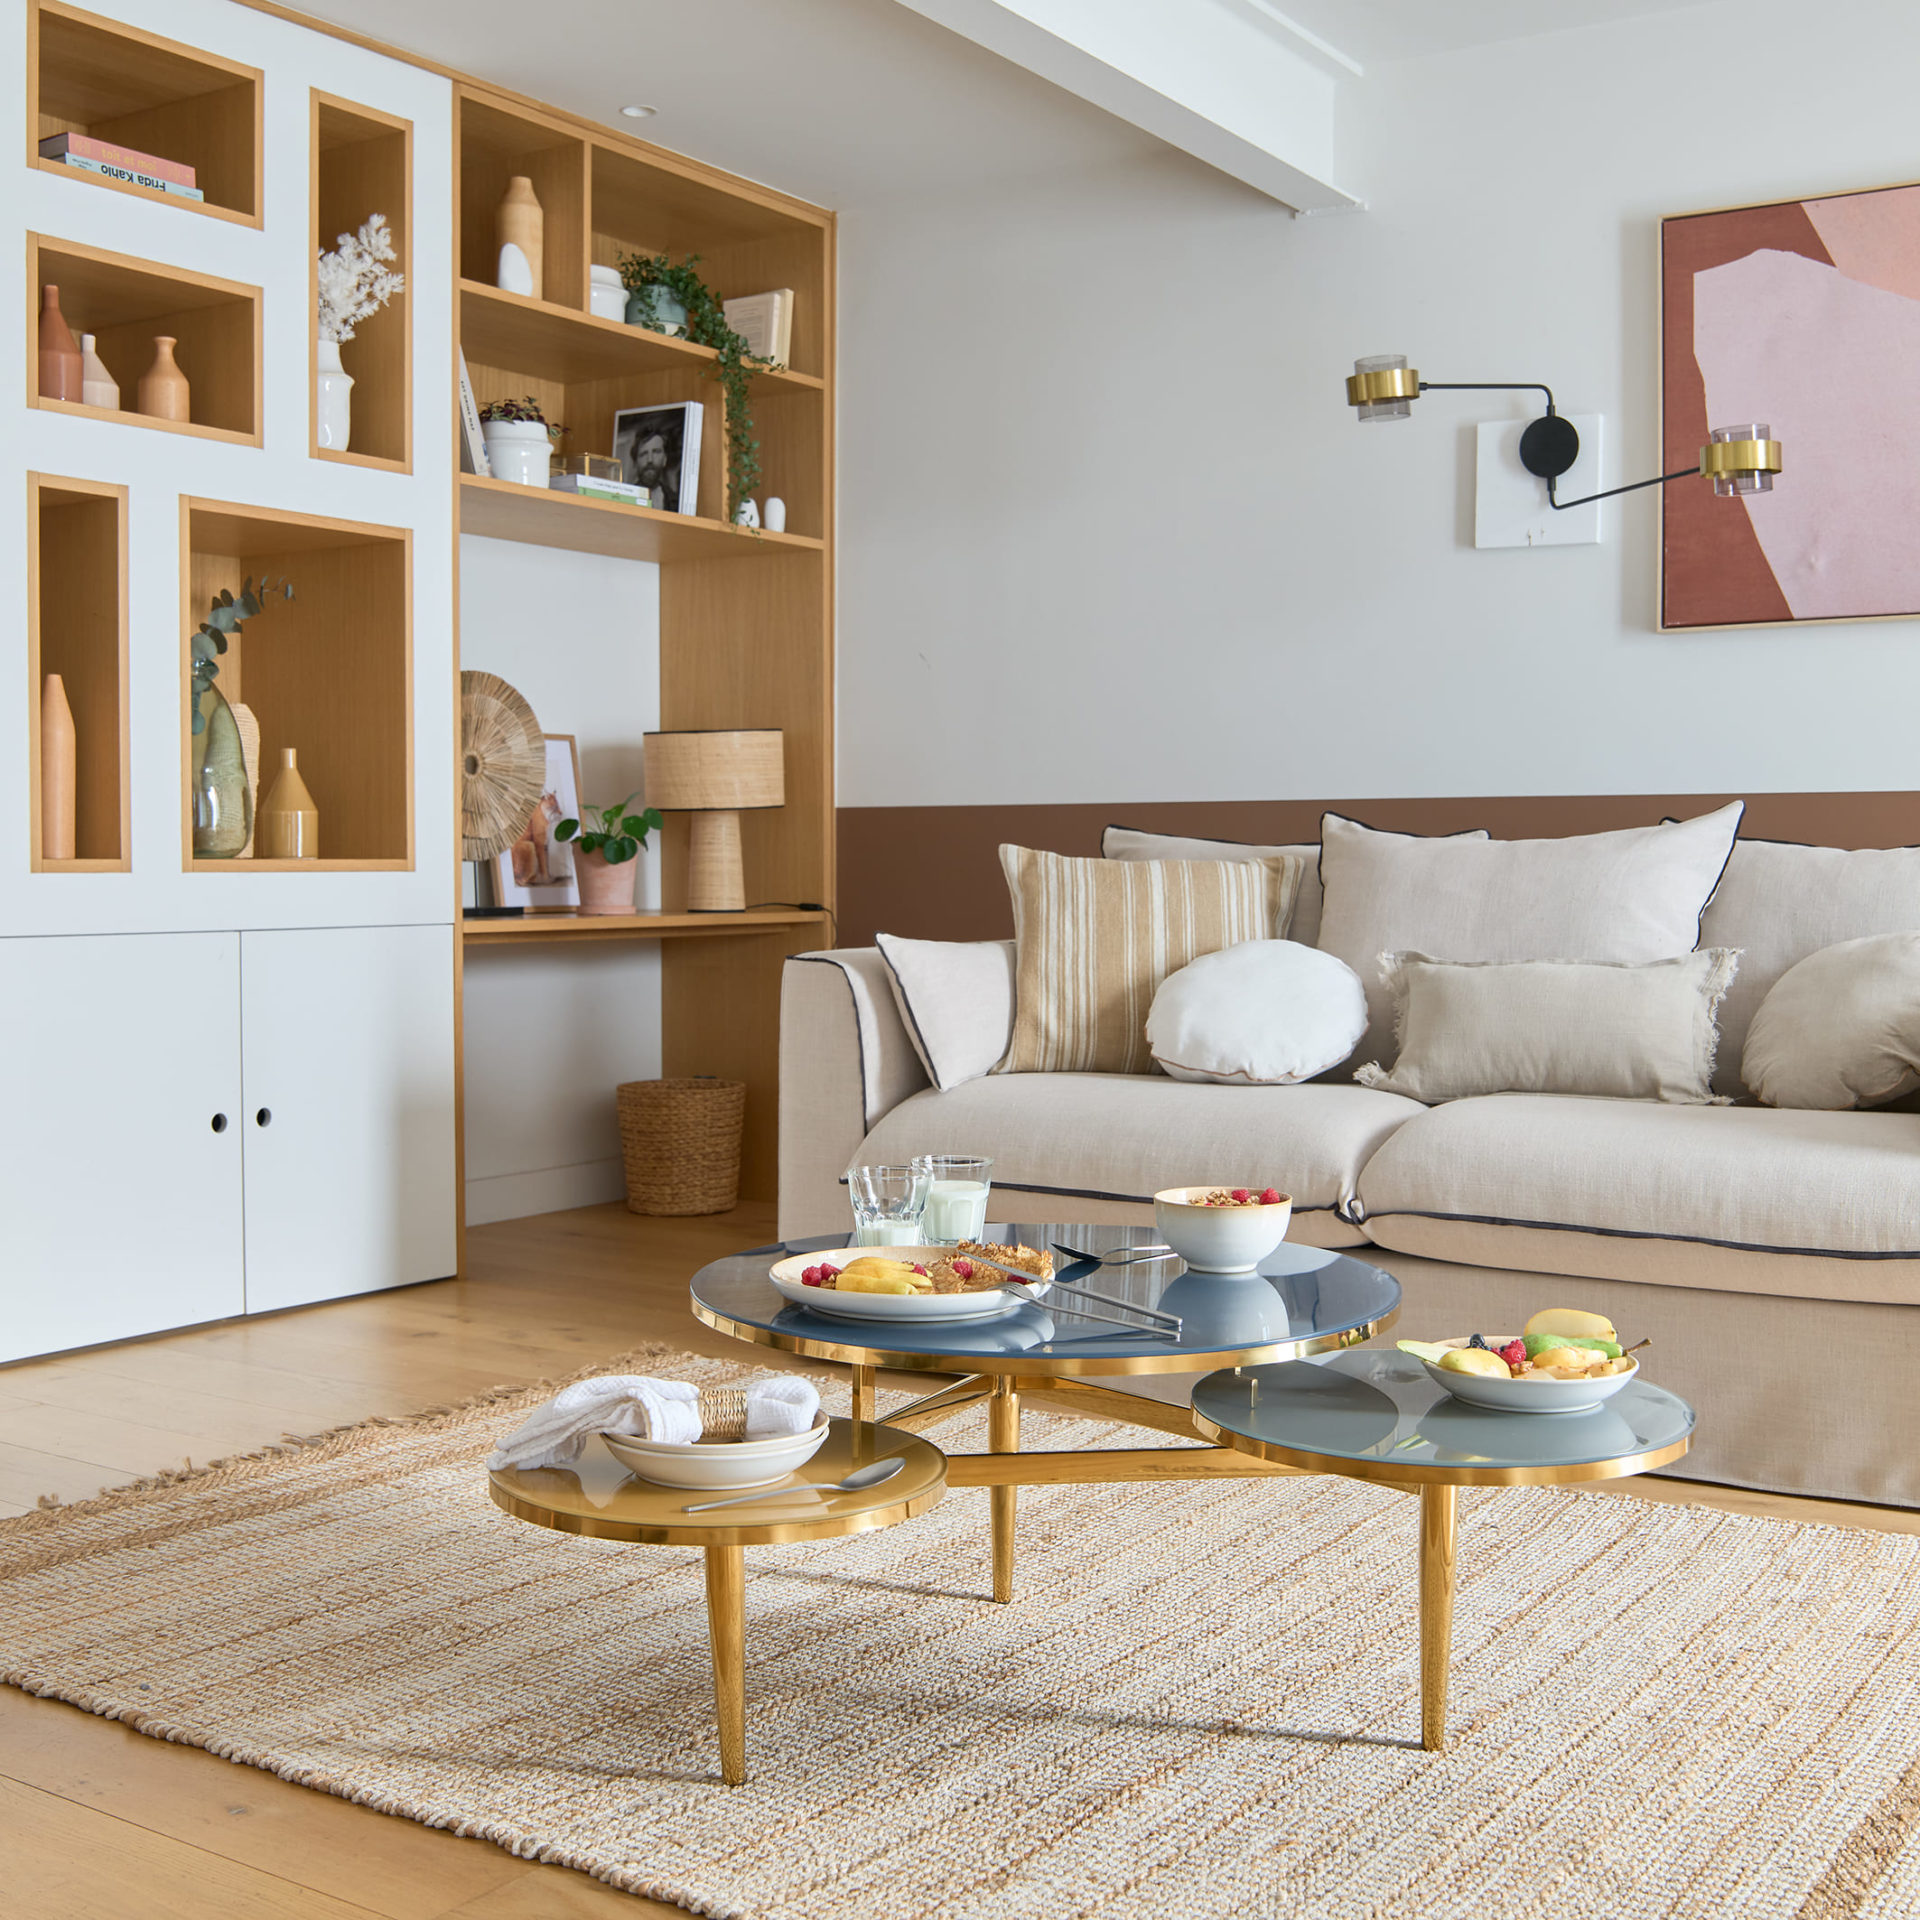 As mesas de centro da La Redoute prometem dar um novo ar à sala de estar